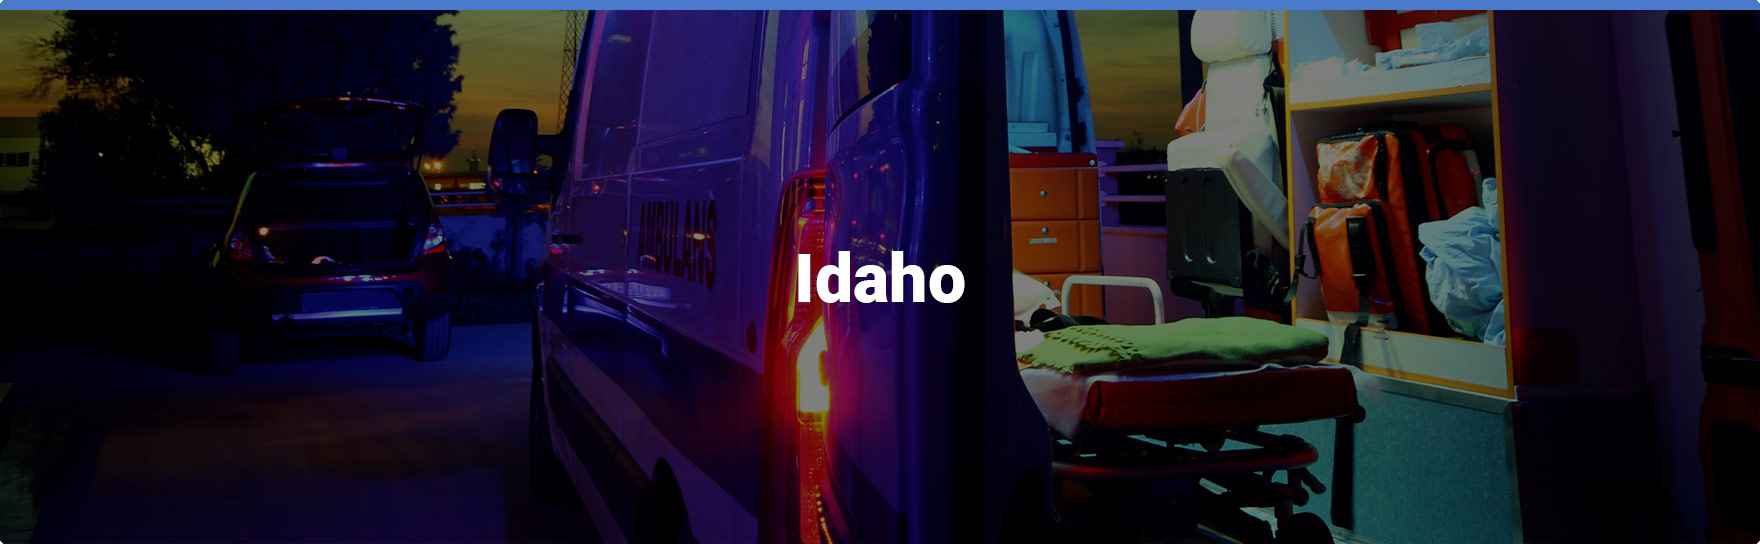 feature Idaho